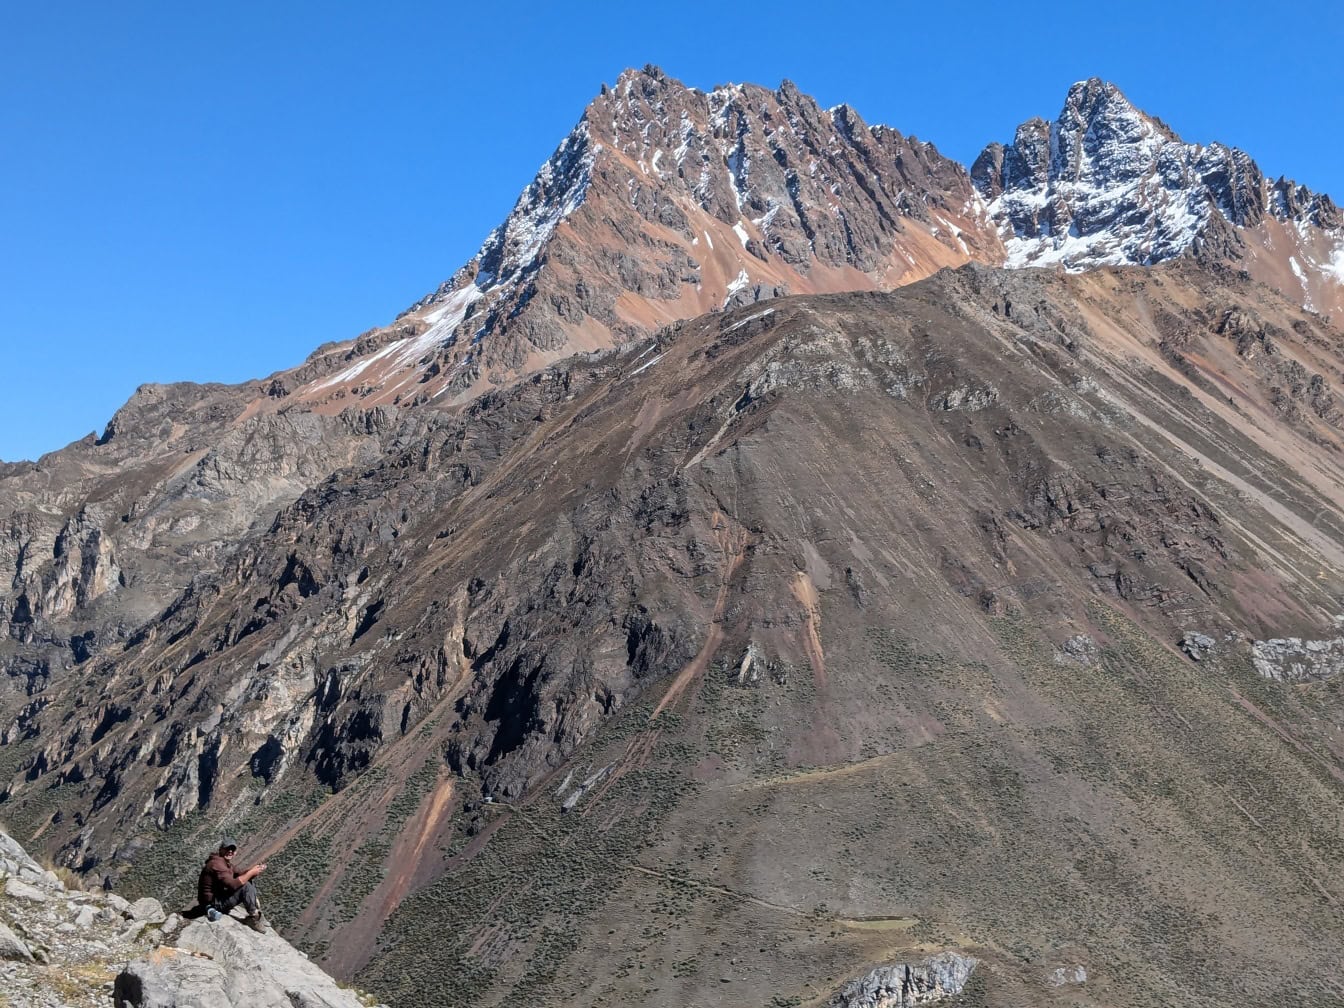 คนนั่งอยู่บนโขดหินที่เทือกเขา Cordillera Huayhuash ในเทือกเขาแอนดีสของเปรูเป็นฉากหลัง